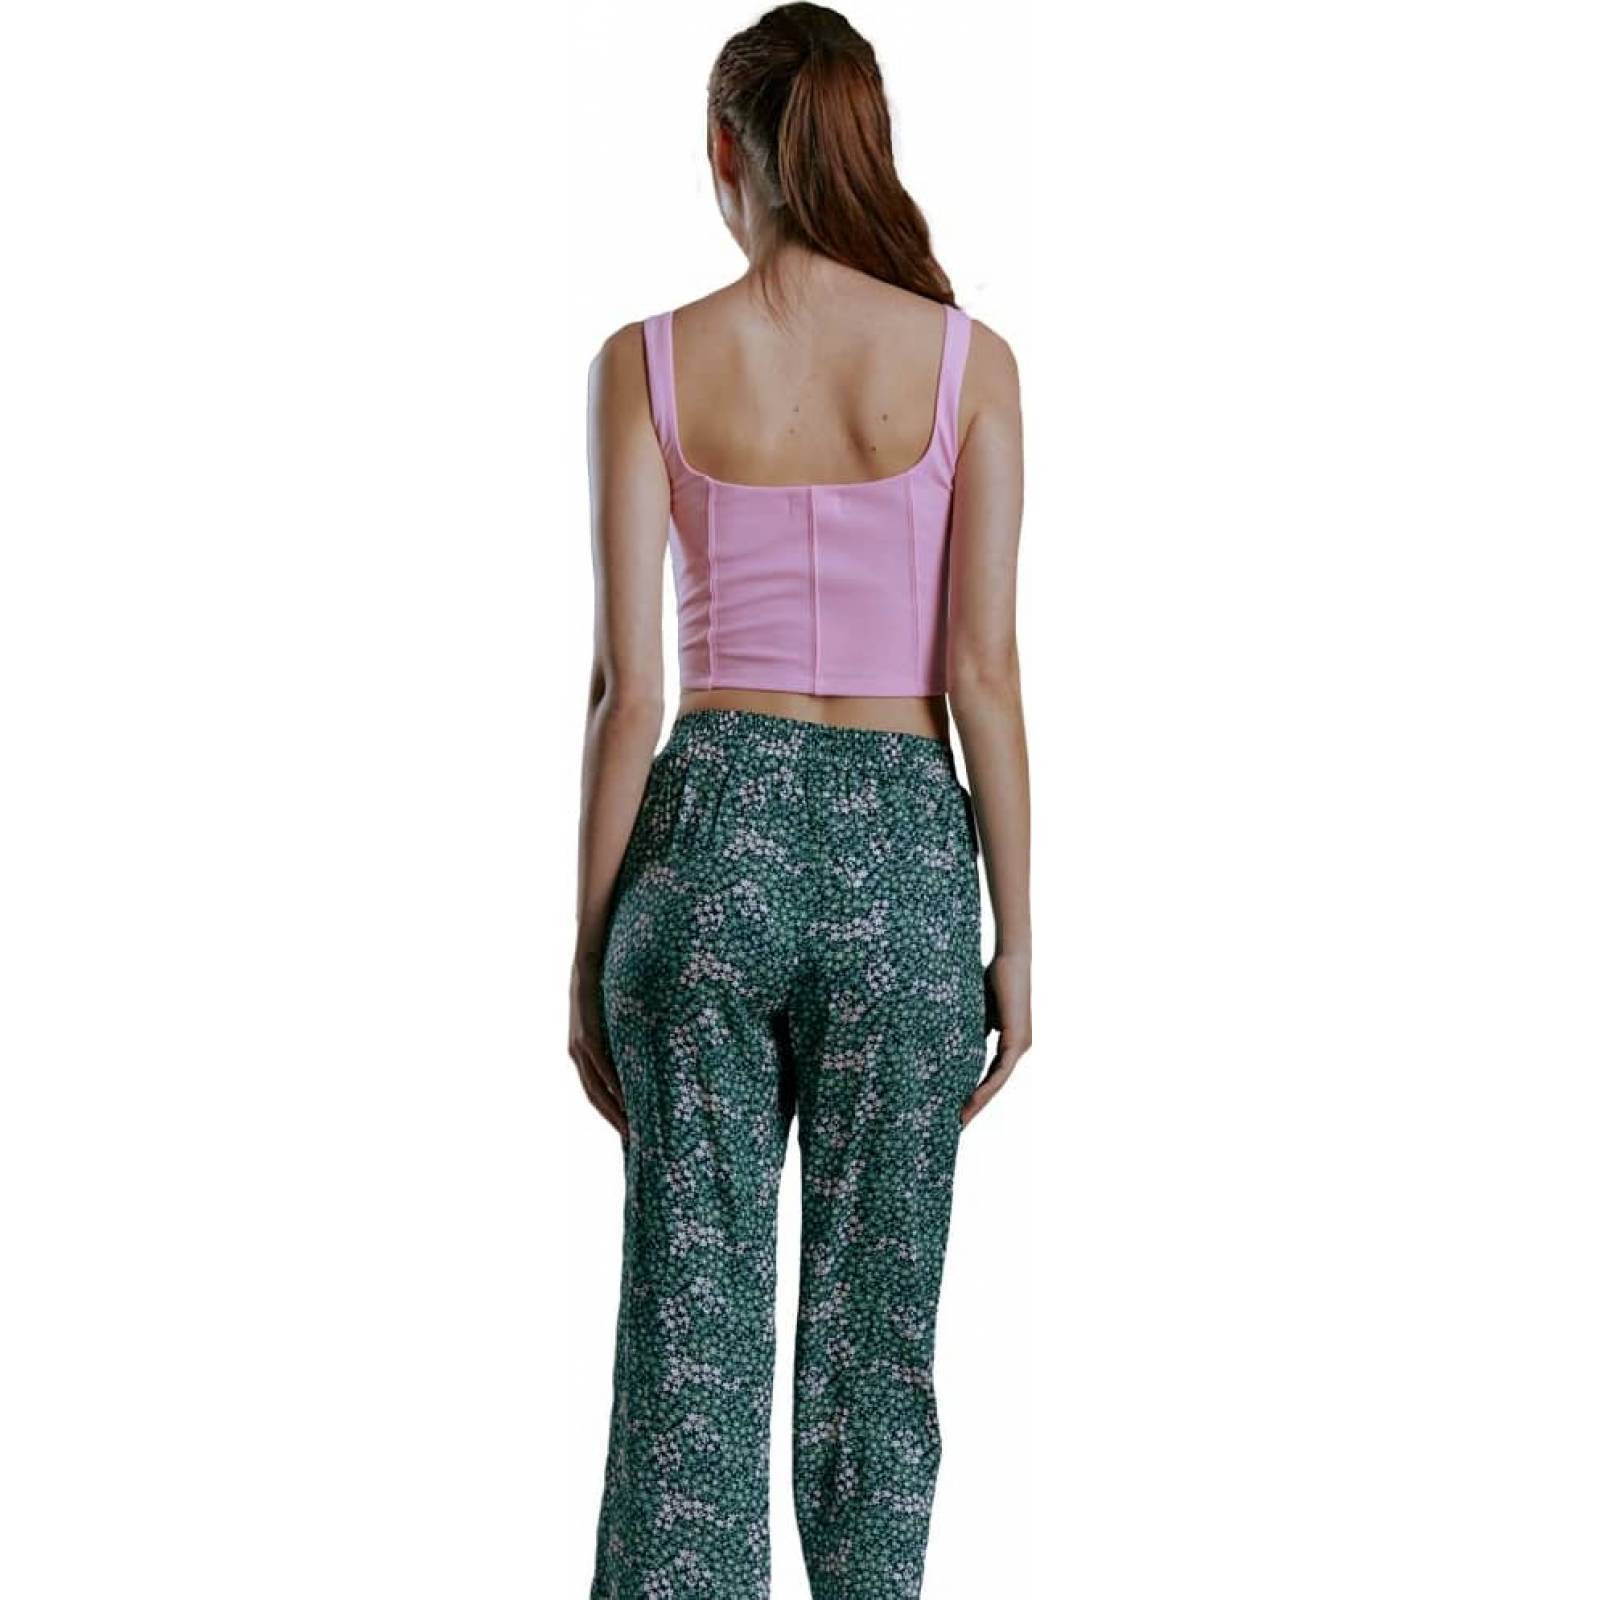 Pants Conjunto 2 Piezas Casual Holly Land color Rosa para Mujer